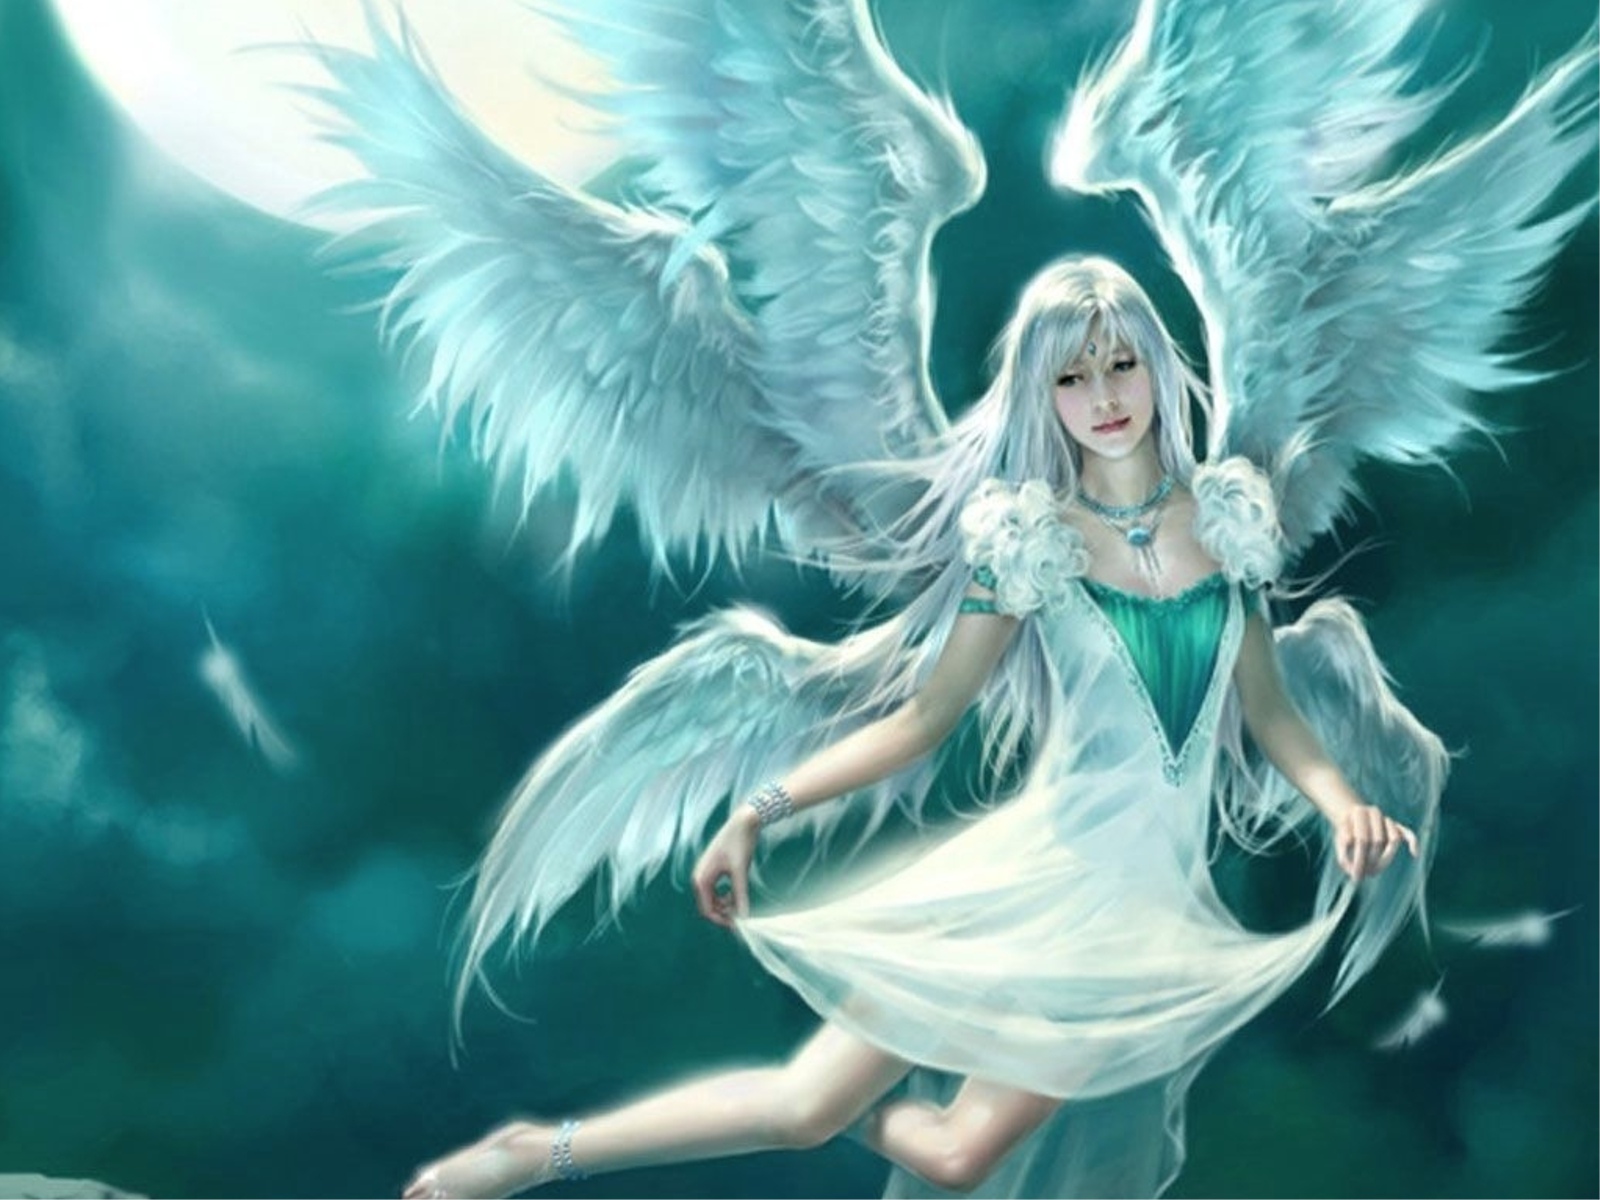 papier peint engel,ange,oeuvre de cg,personnage fictif,créature surnaturelle,mythologie